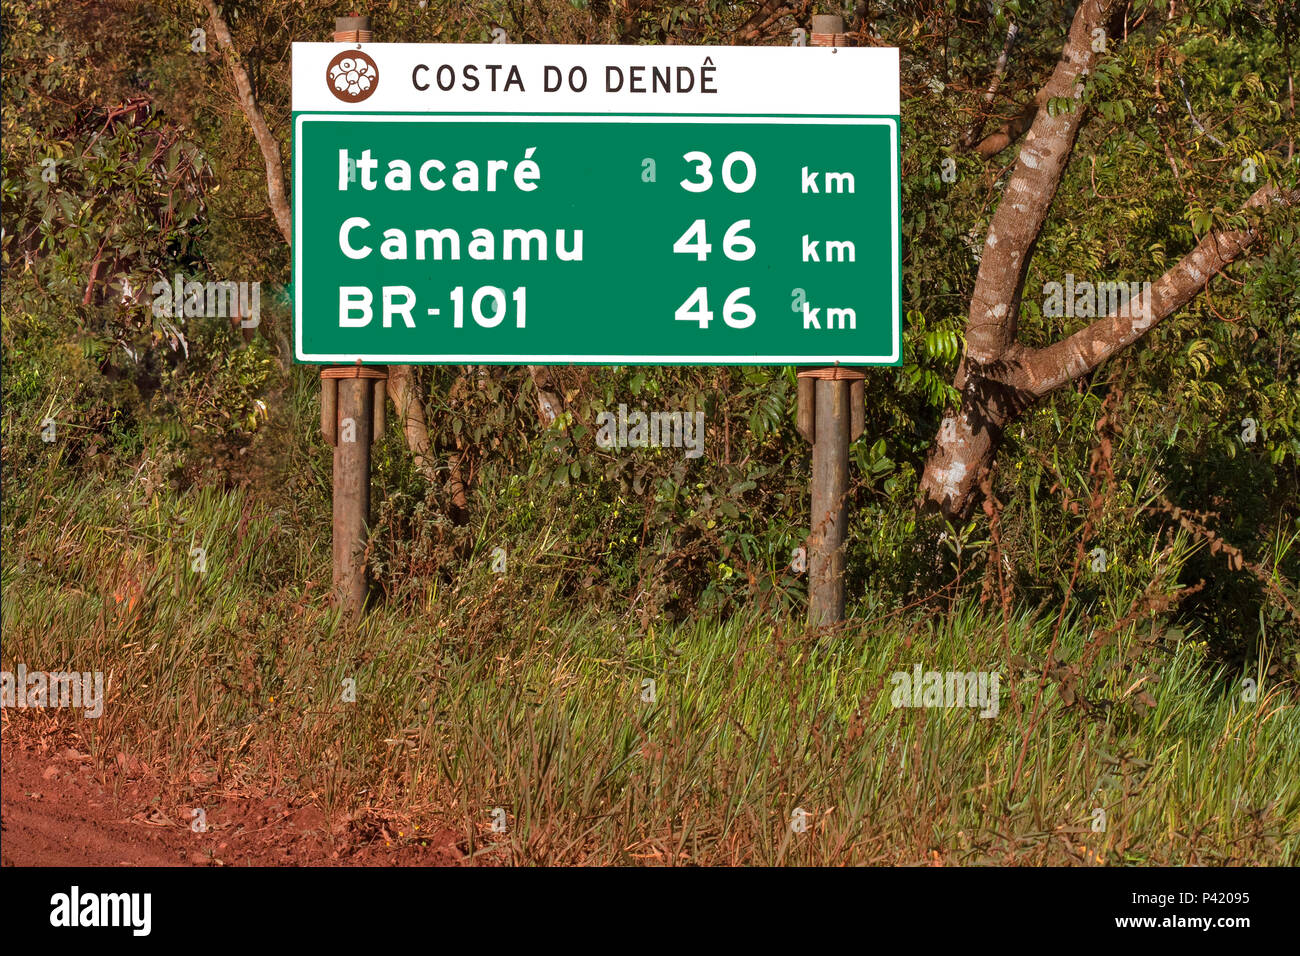 BR 101 - Costa do dendê Bahia Plaza da BR 101 Plaça indicando distâncias de Itacaré e Camamu na Bahia Costa do dendê Sul da Bahia Maraú Bahia Brasil Nordeste Foto de stock